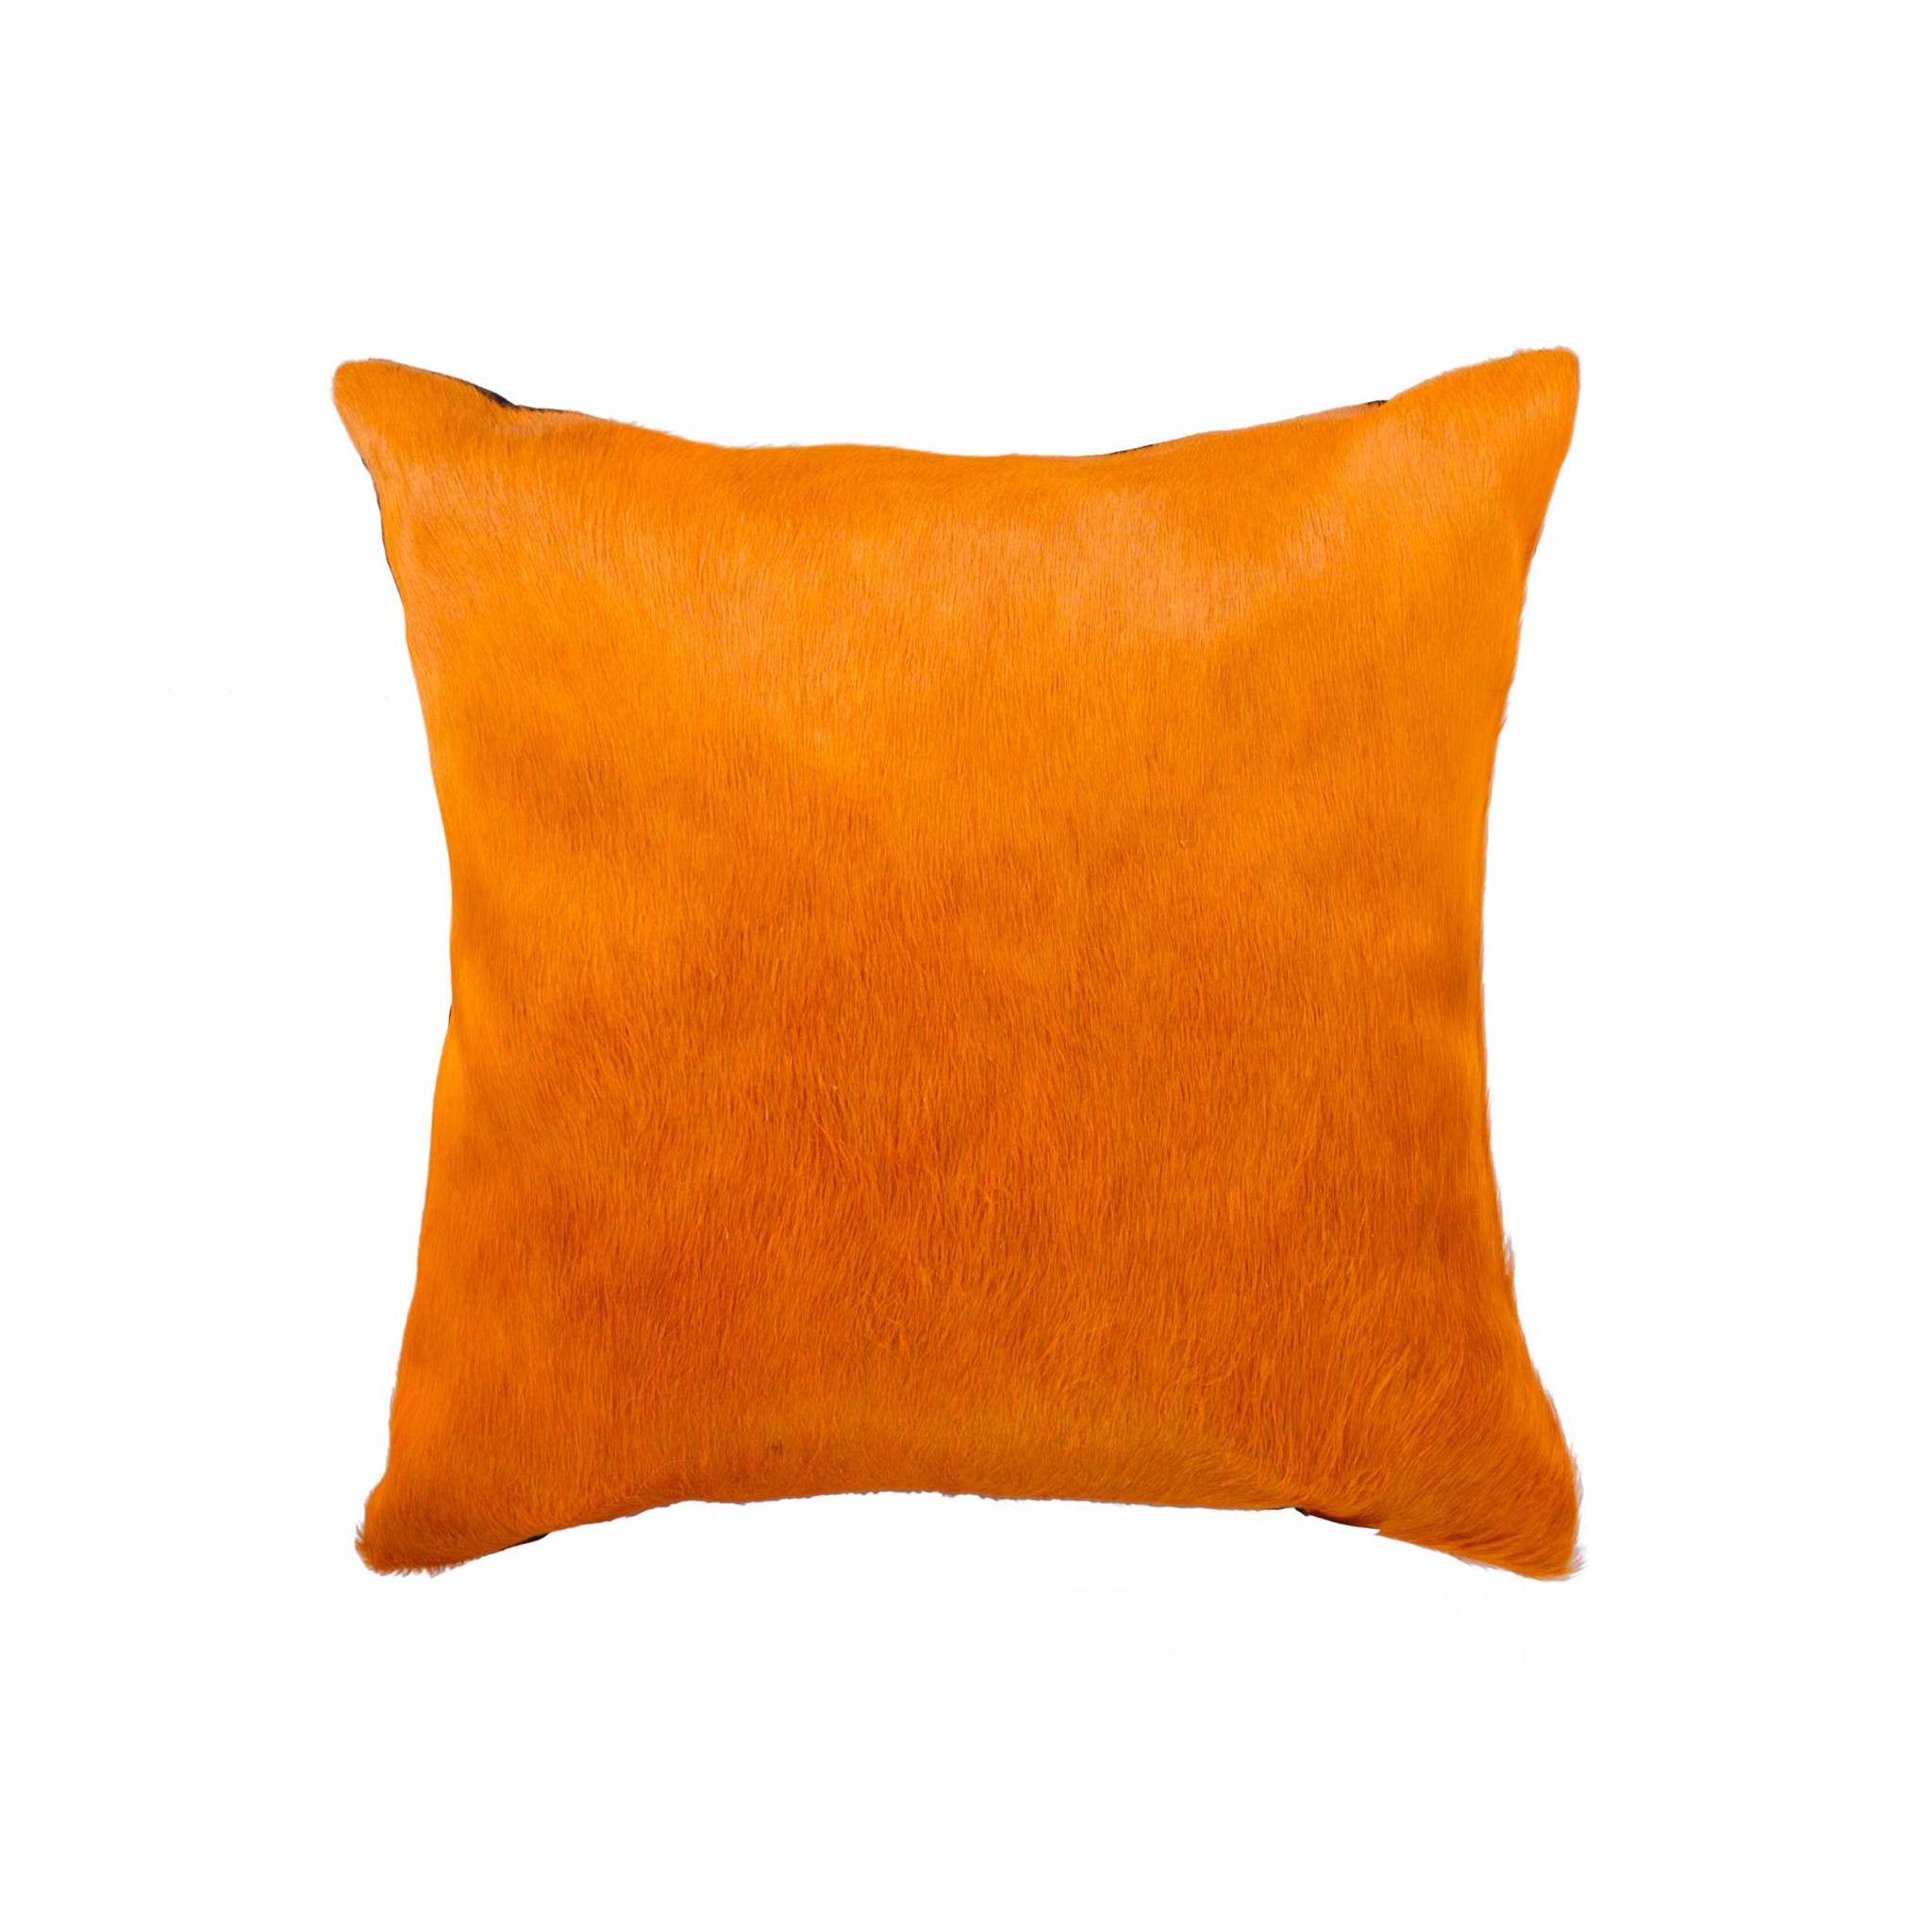 18" x 18" x 5" Orange Cowhide - Pillow